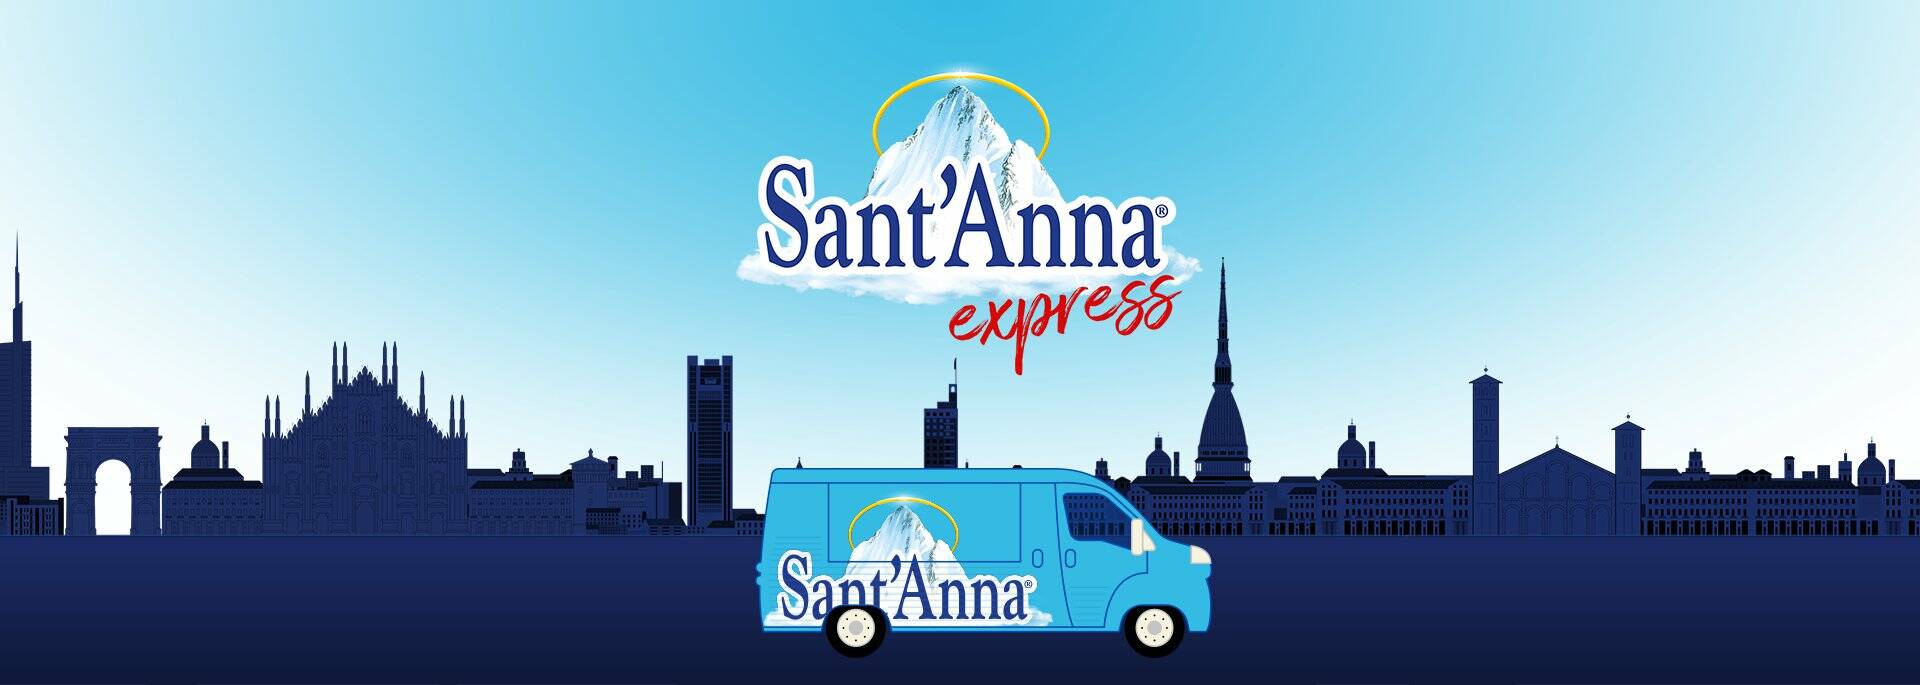 È arrivato Sant’Anna Express!